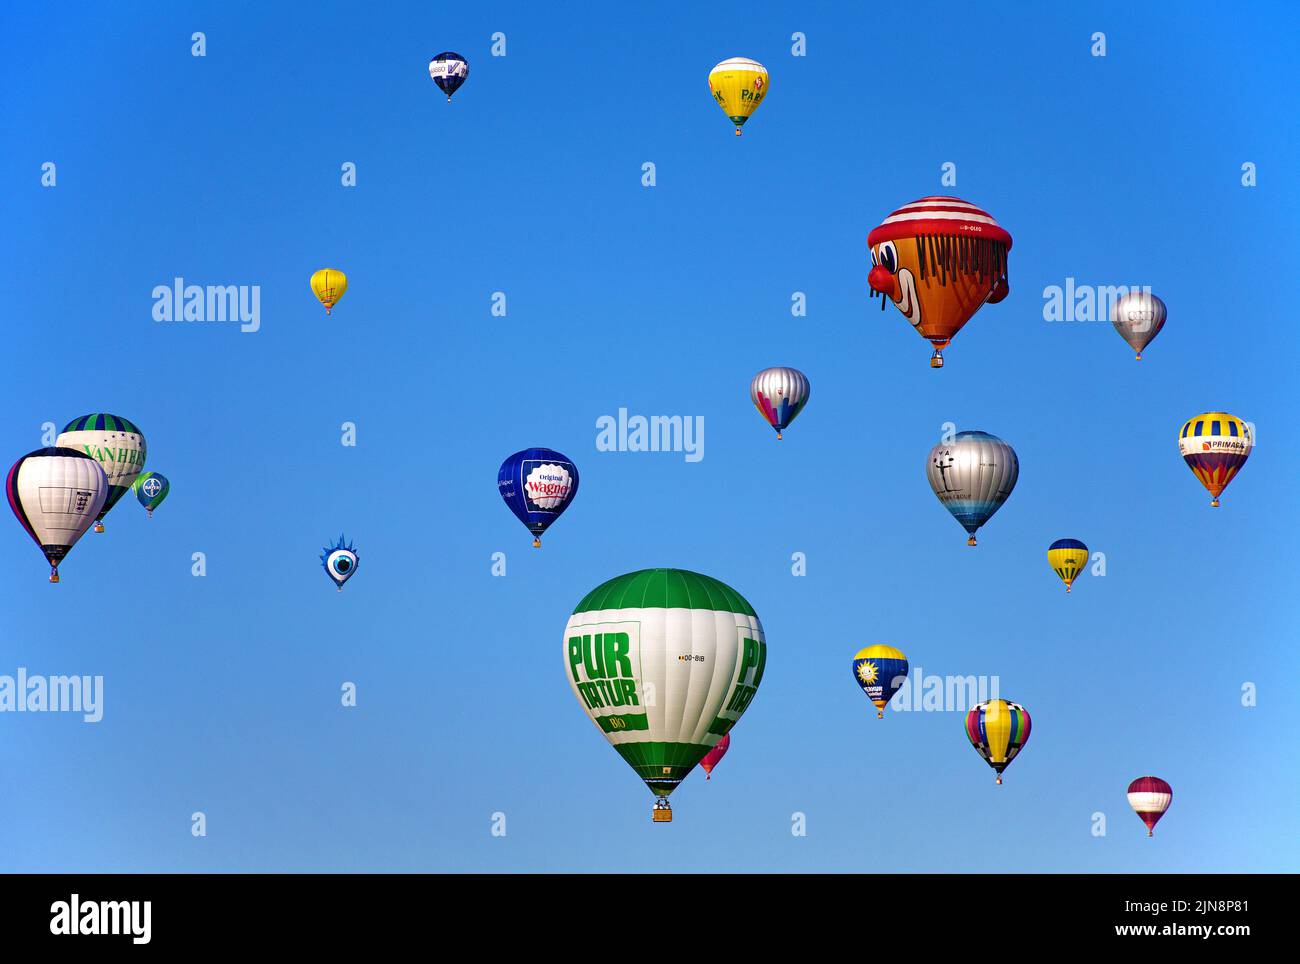 Ballon à air chaud en vol, Mosel-ballon-Fiesta à l'aéroport de Trèves-Foehren, Rhénanie-Palatinat, Allemagne, Europe Banque D'Images